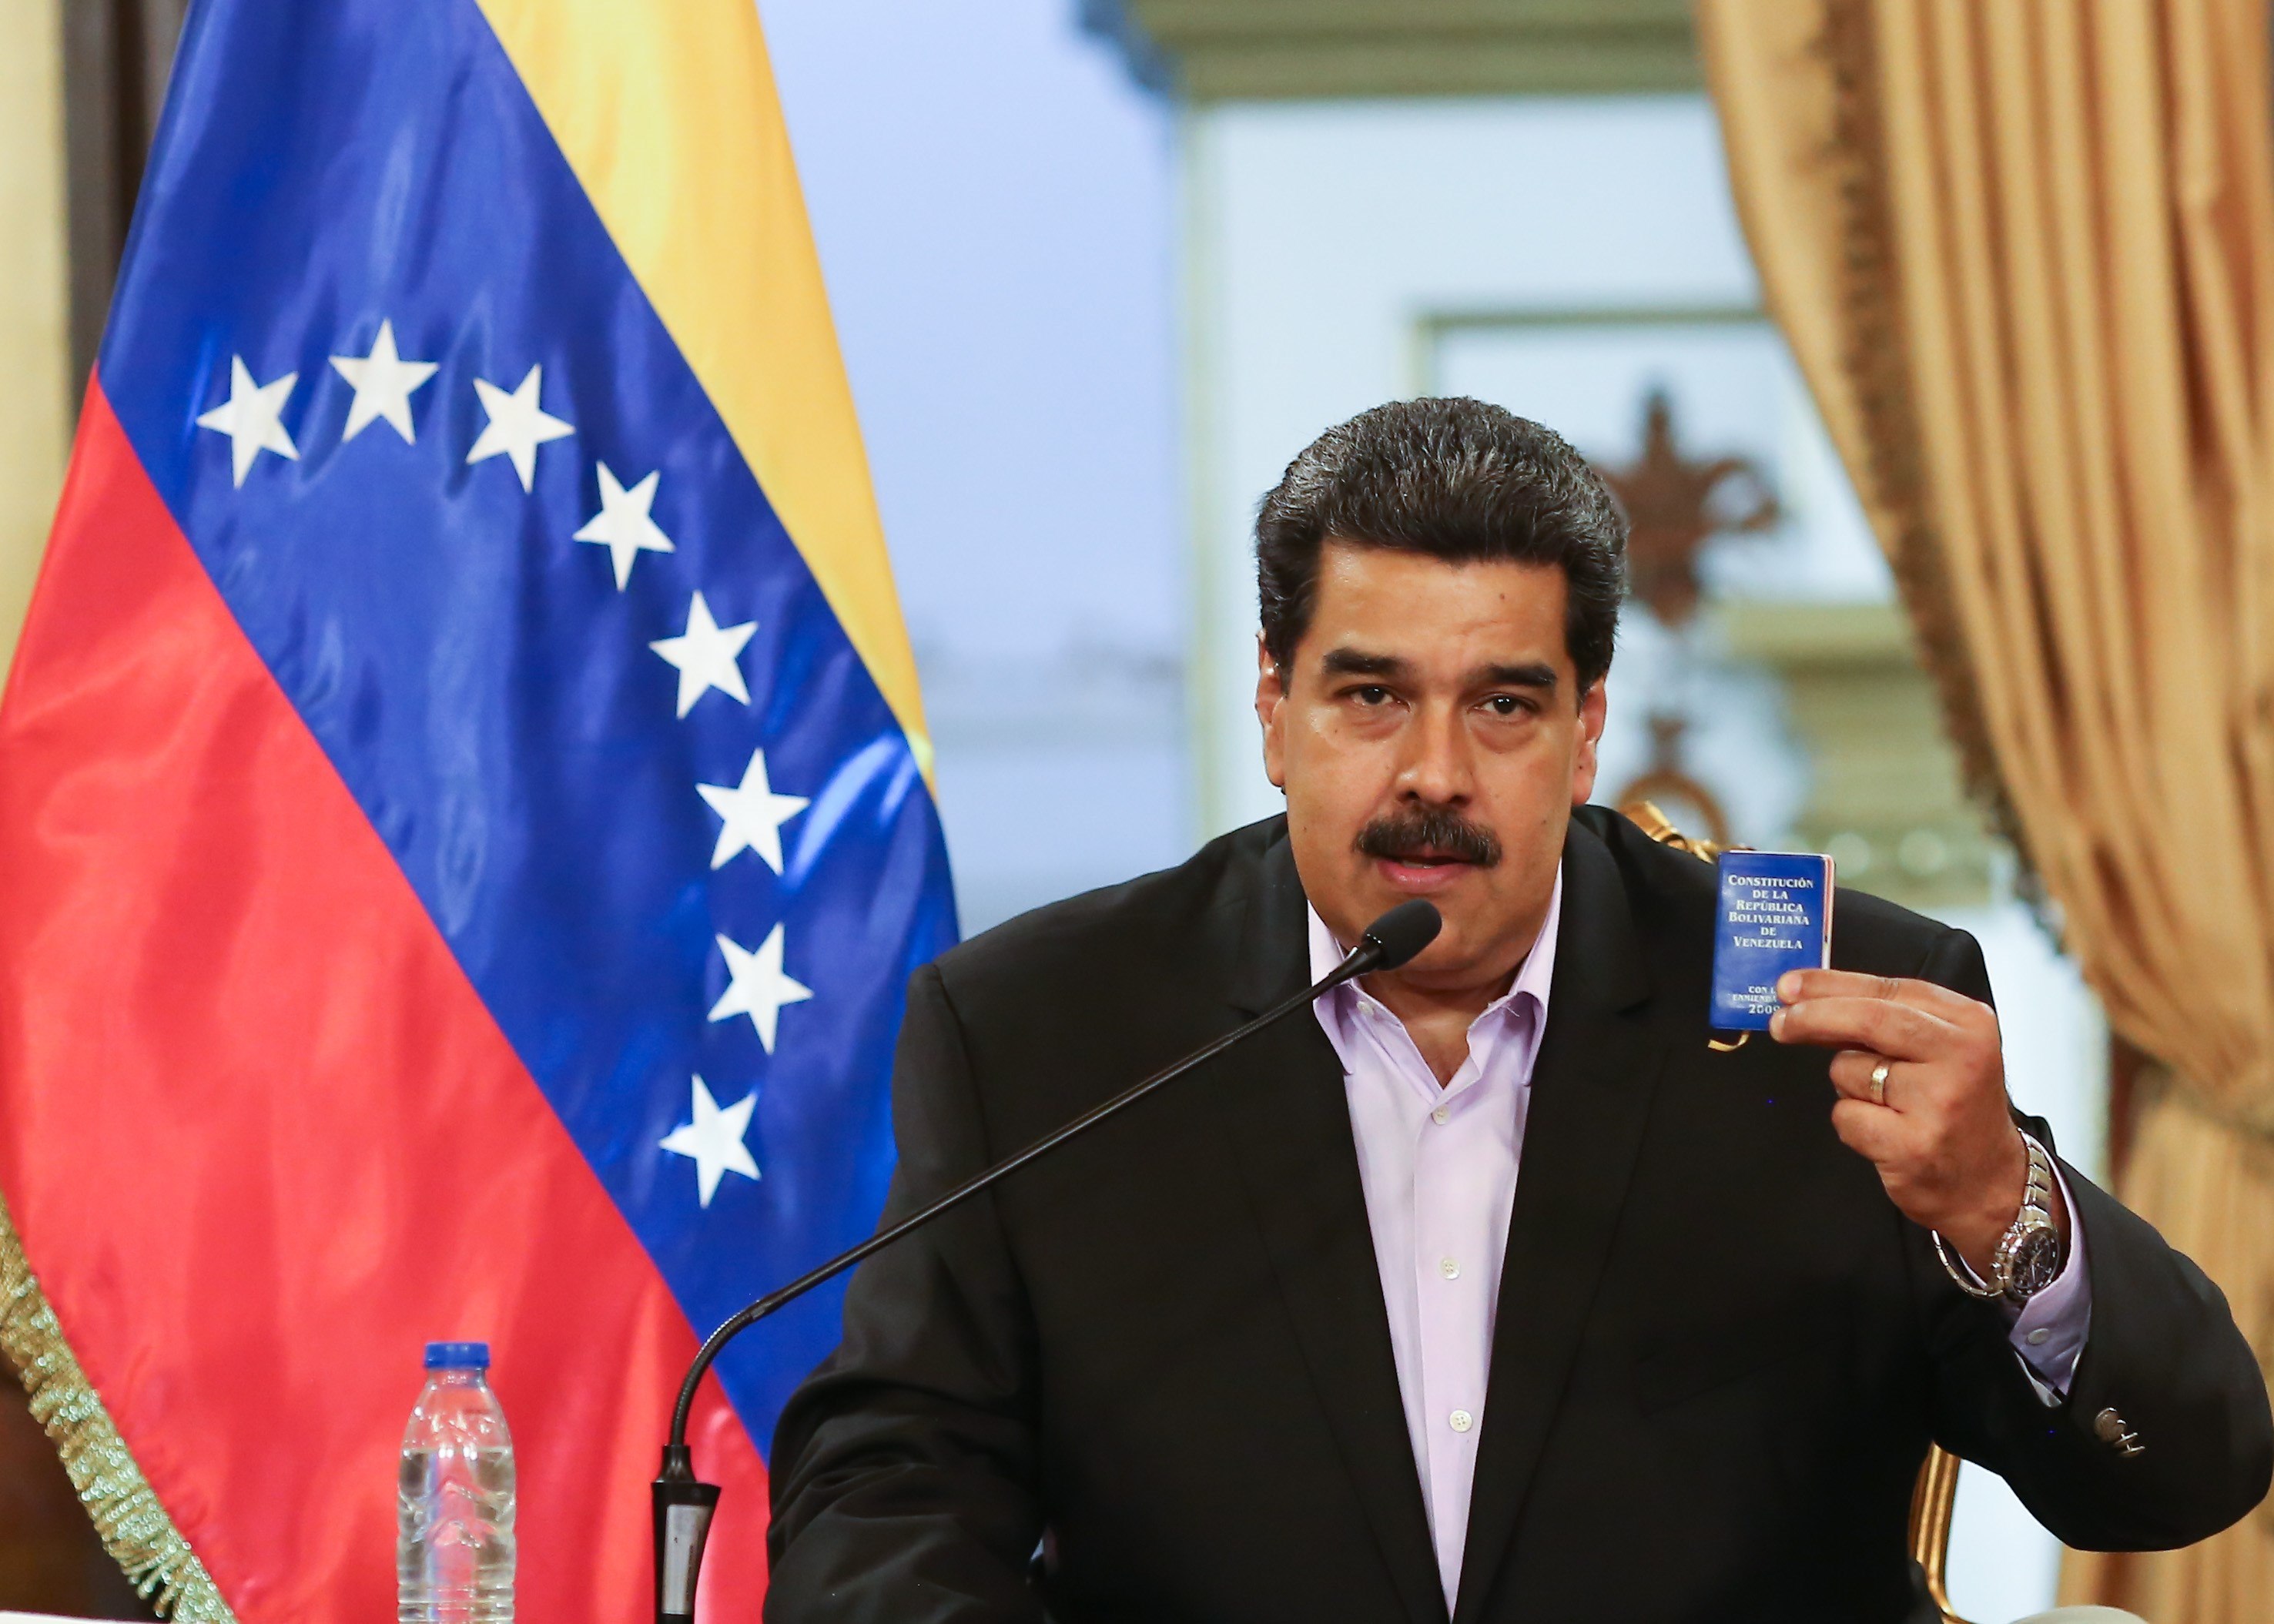  Nicolás Maduro reitera su disposición a dialogar con oposición y agradece a Noruega